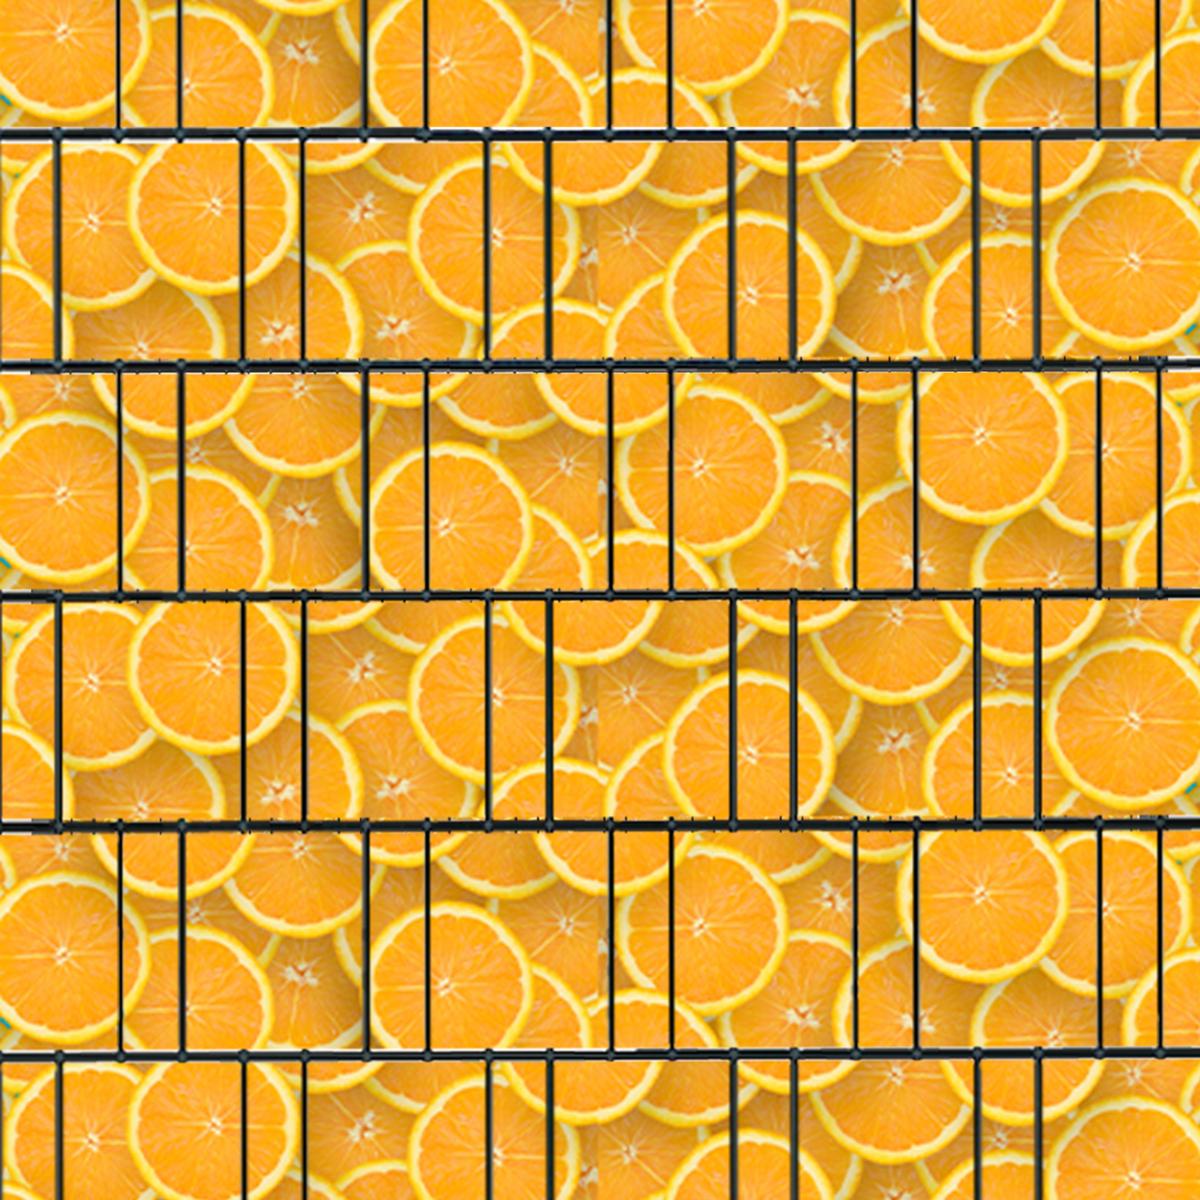 Orangen (4453) - Sichtschutzstreifen